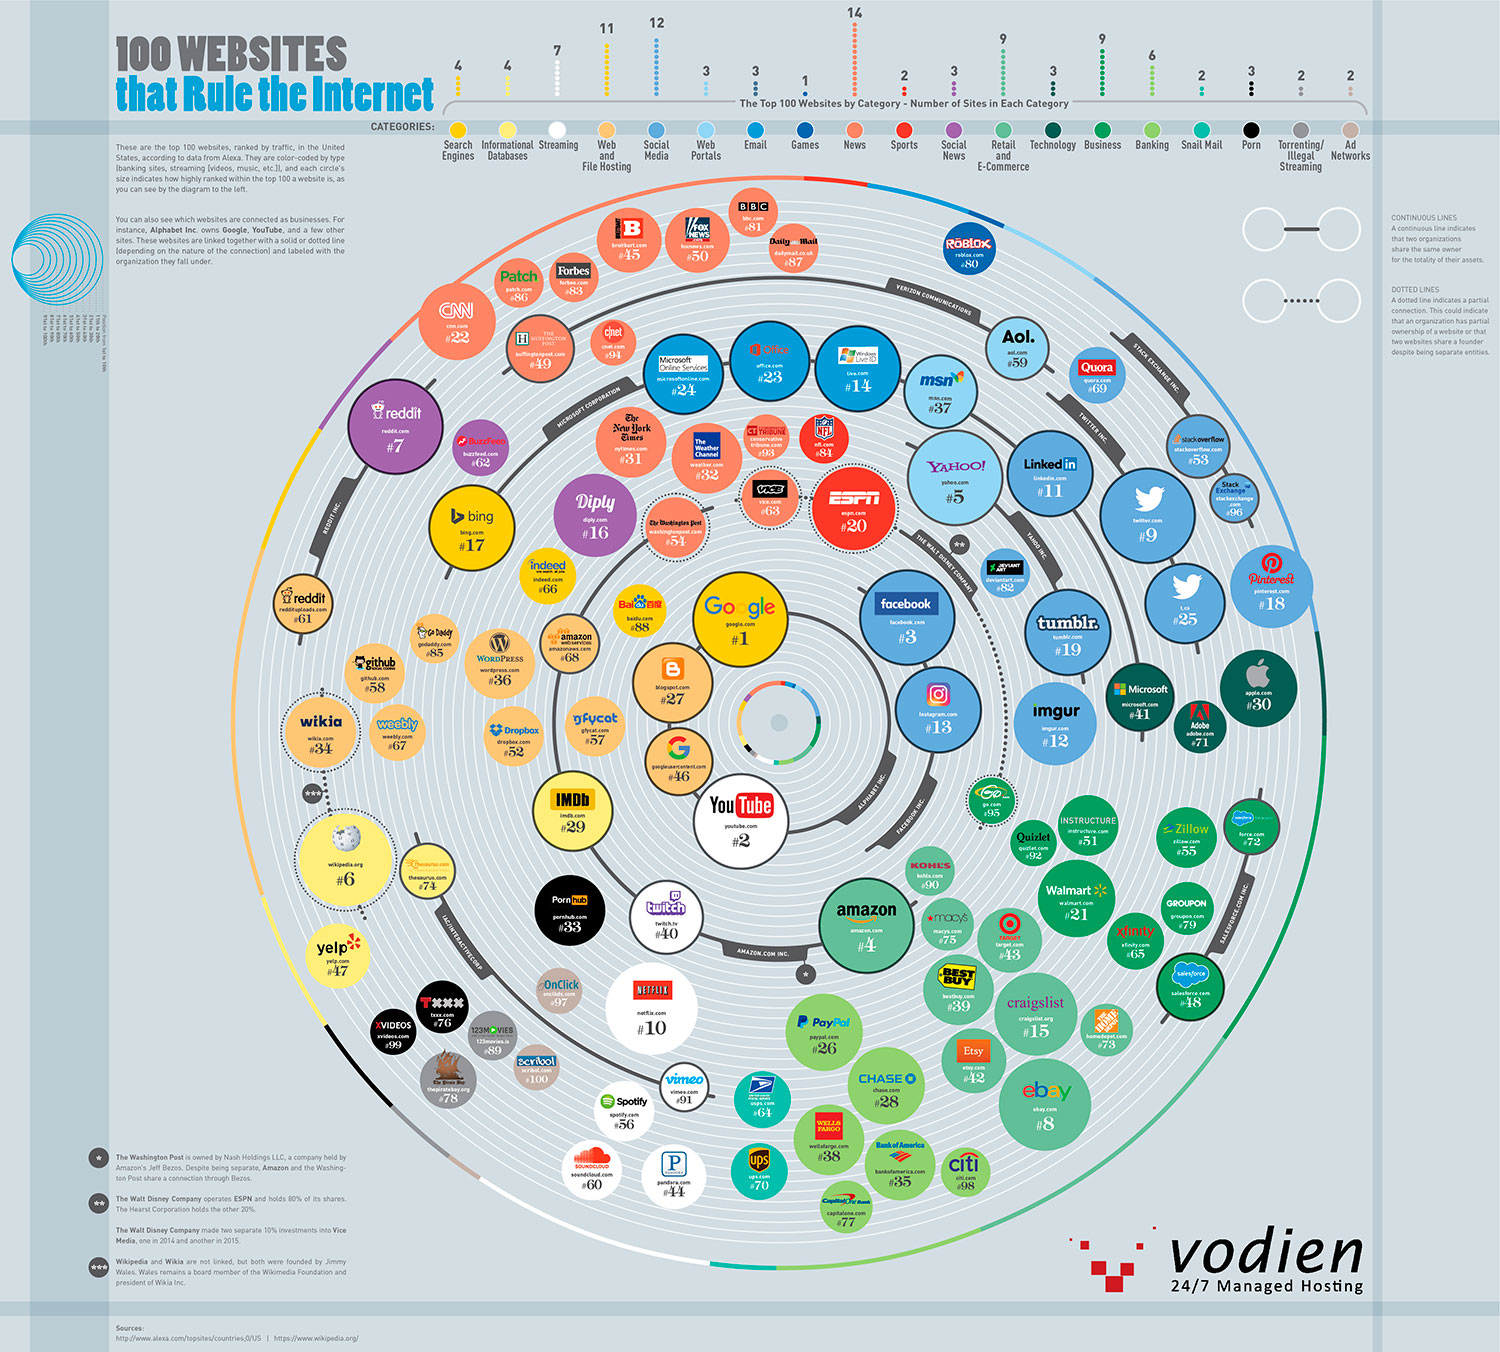 Las 100 webs que dominan Internet en la actualidad